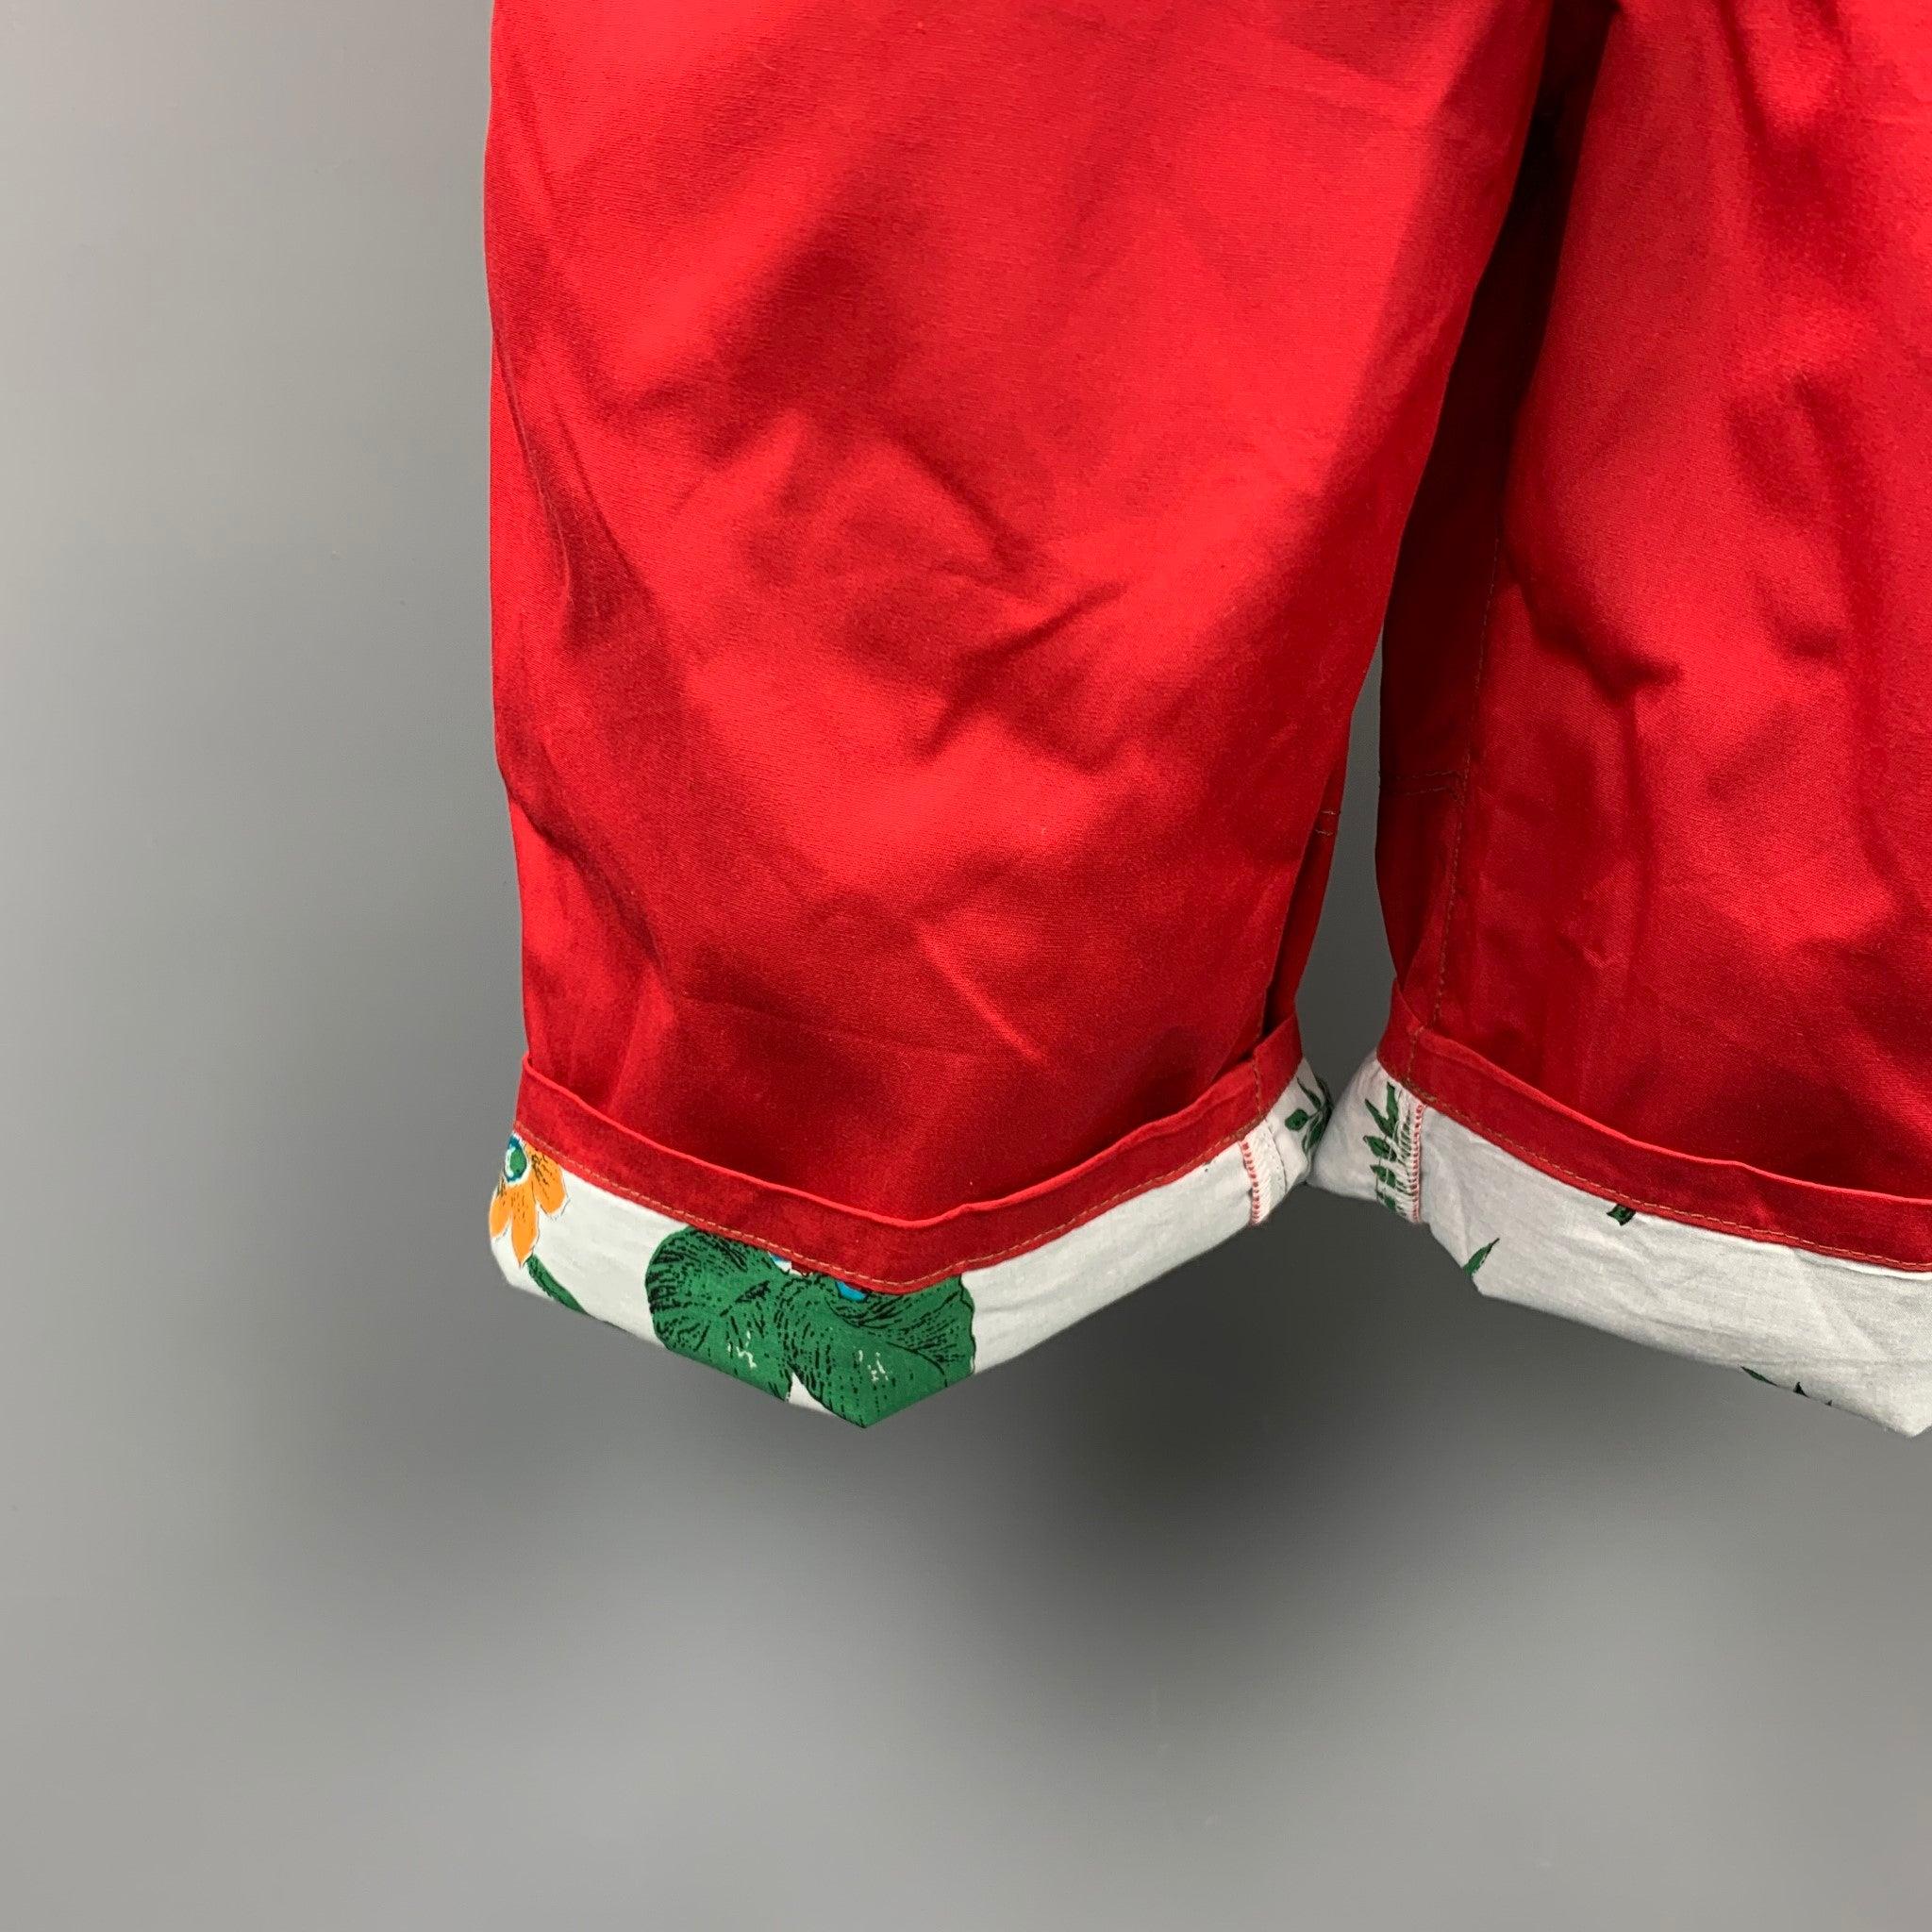 JUNYA WATANABE Shorts aus einer roten Polyestermischung mit Blumenprint, Plissee, Gürtel, Knopfdetails und Reißverschluss. Hergestellt in Japan.
Neu mit Tags.
 

Markiert:   XL / AD2013 

Abmessungen: 
  Taille: 32 Zoll 
Steigung: 11 Zoll